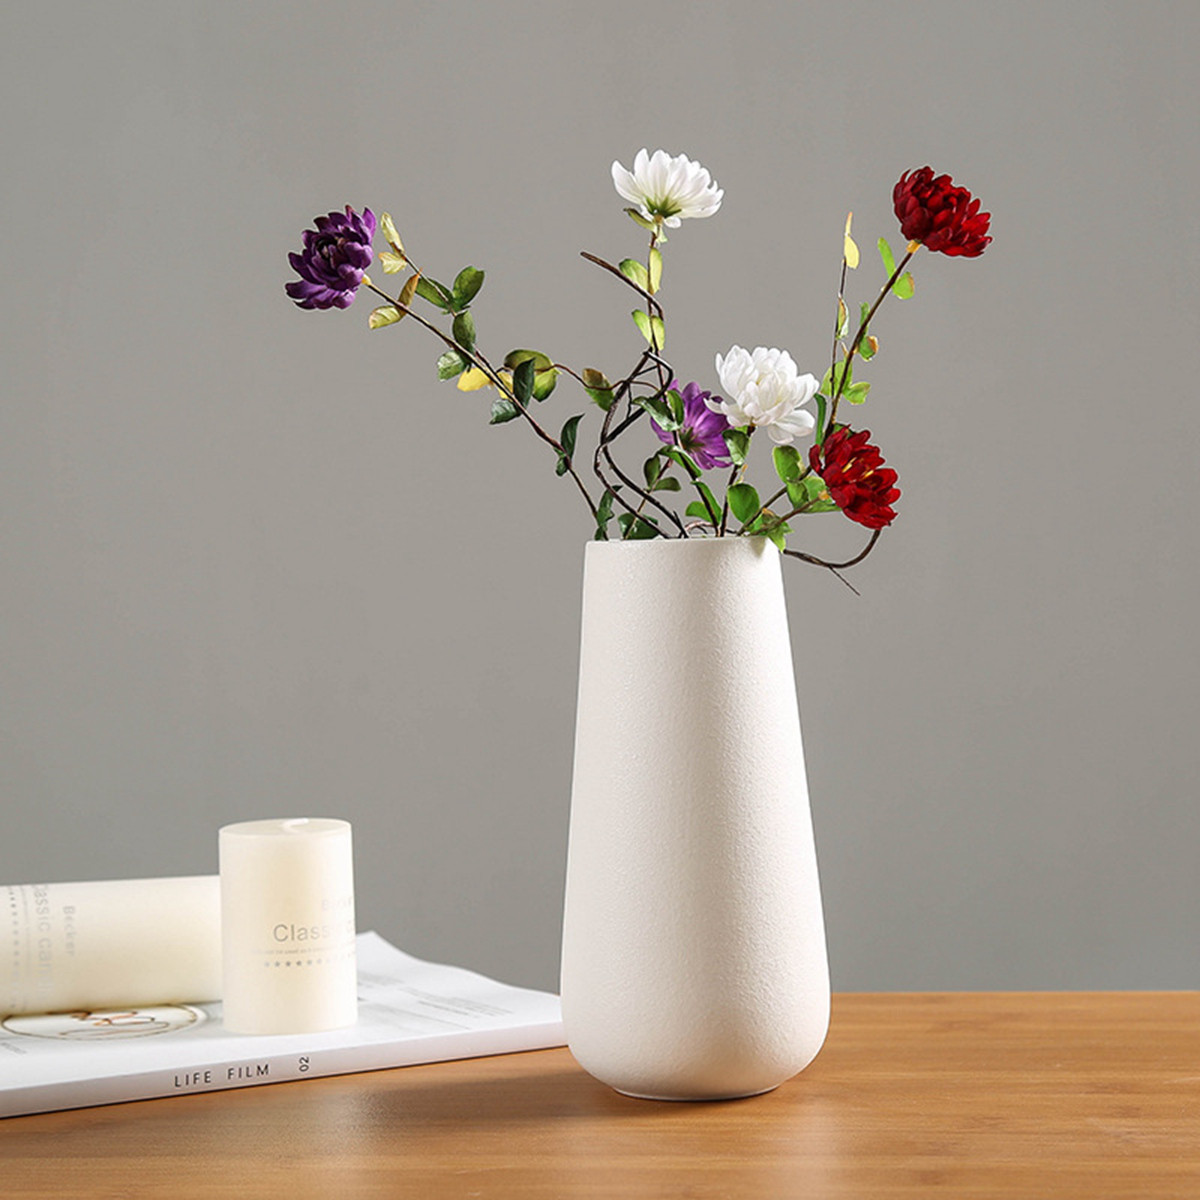 白瓷小清新干花创意陶瓷花瓶简约现代满天星插花花器宜家客厅摆件